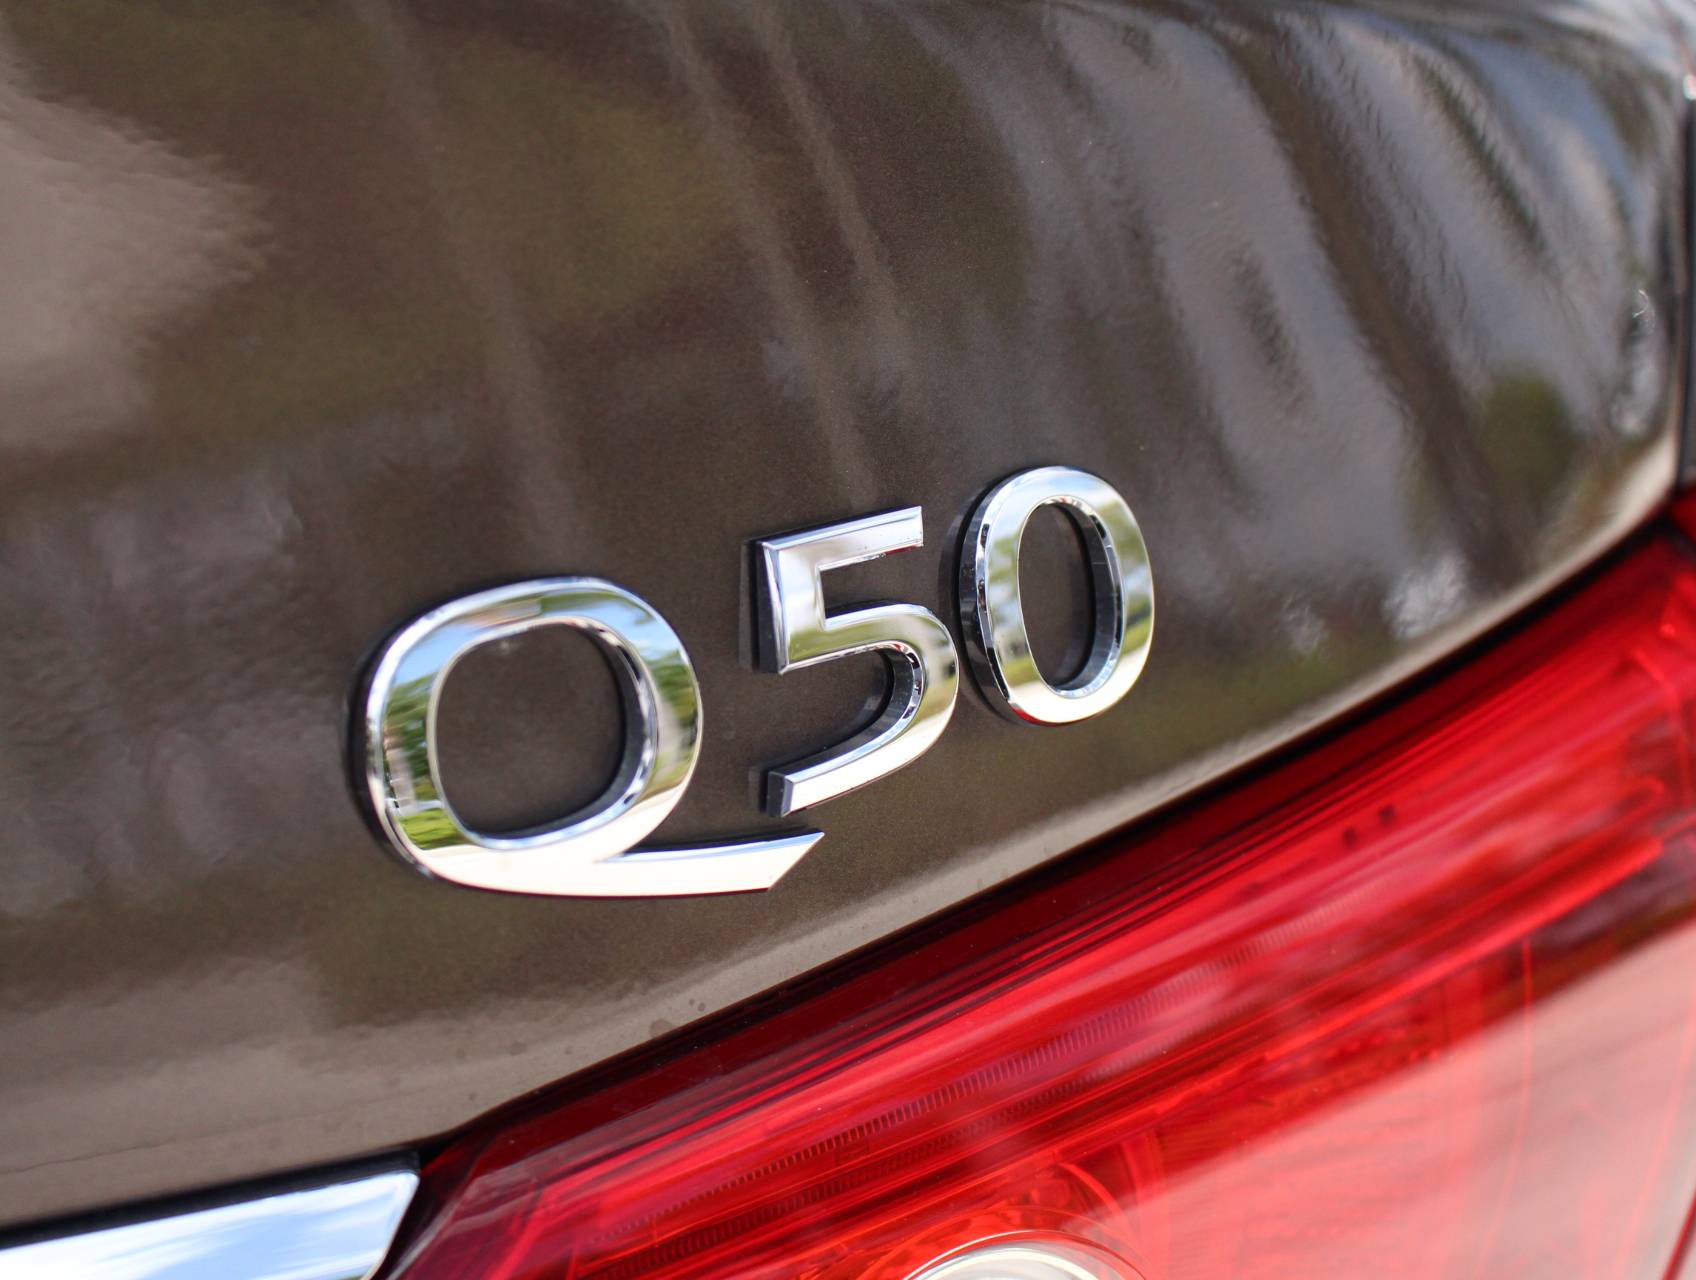 Florida Fine Cars - Used INFINITI Q50 2014 MARGATE Premium